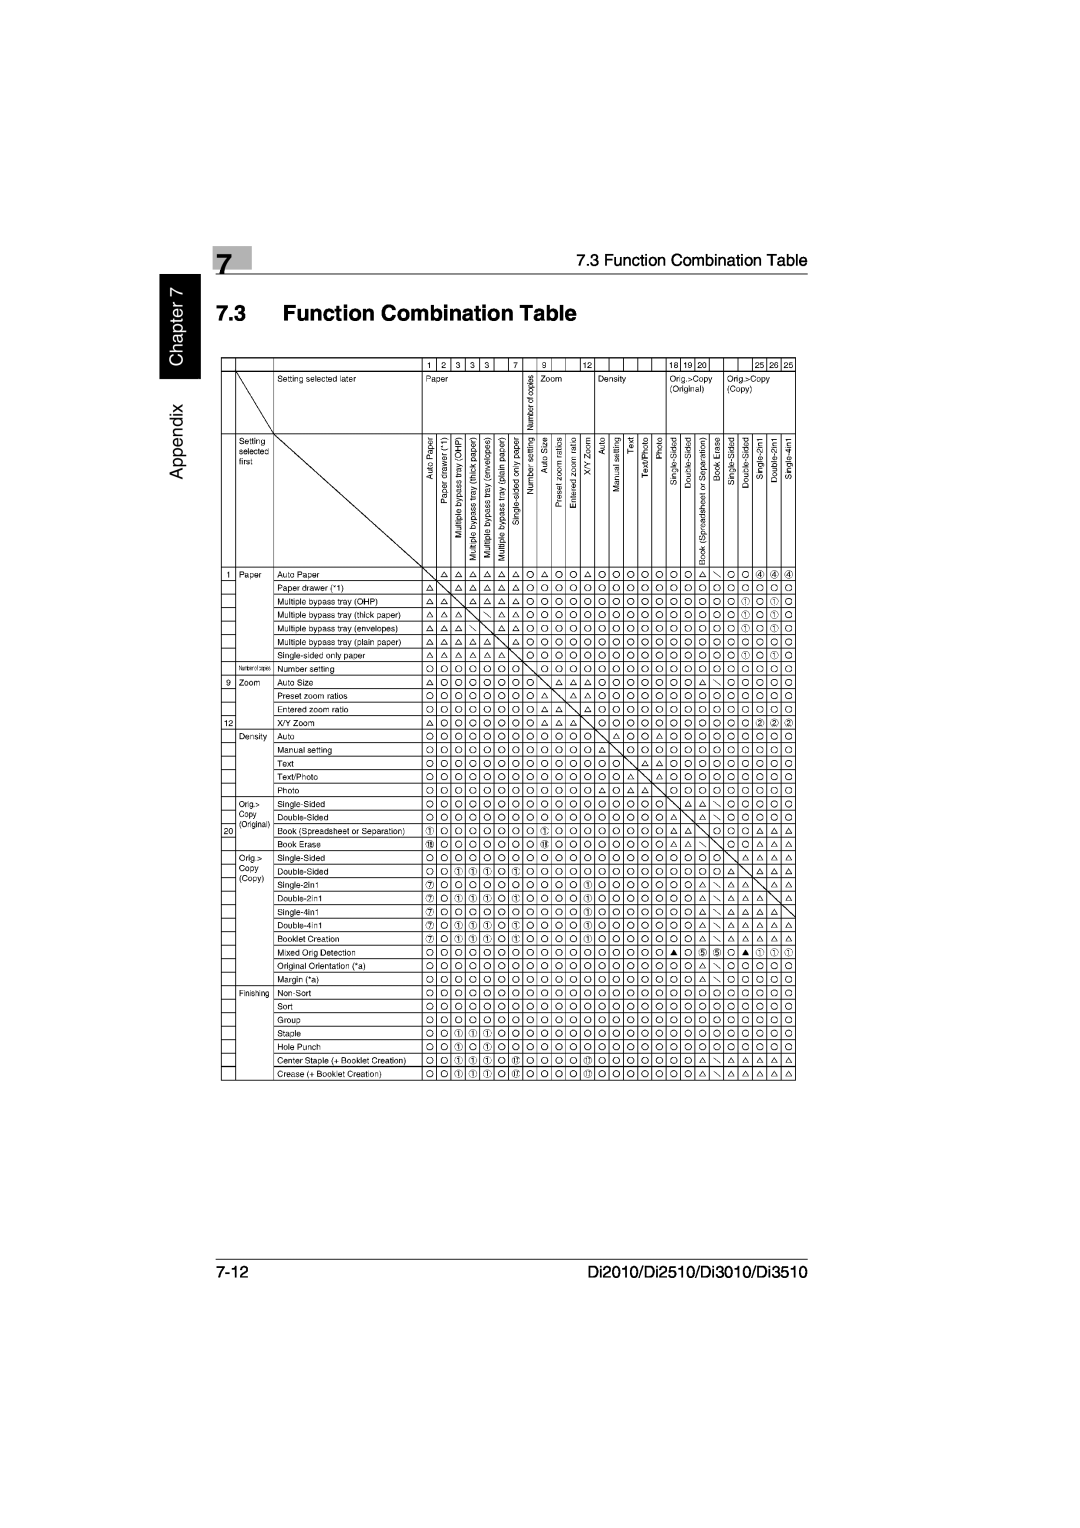 Minolta DI2010, DI2510, DI3010 user manual Function Combination Table, Appendix Chapter, 7-12, Di2010/Di2510/Di3010/Di3510 